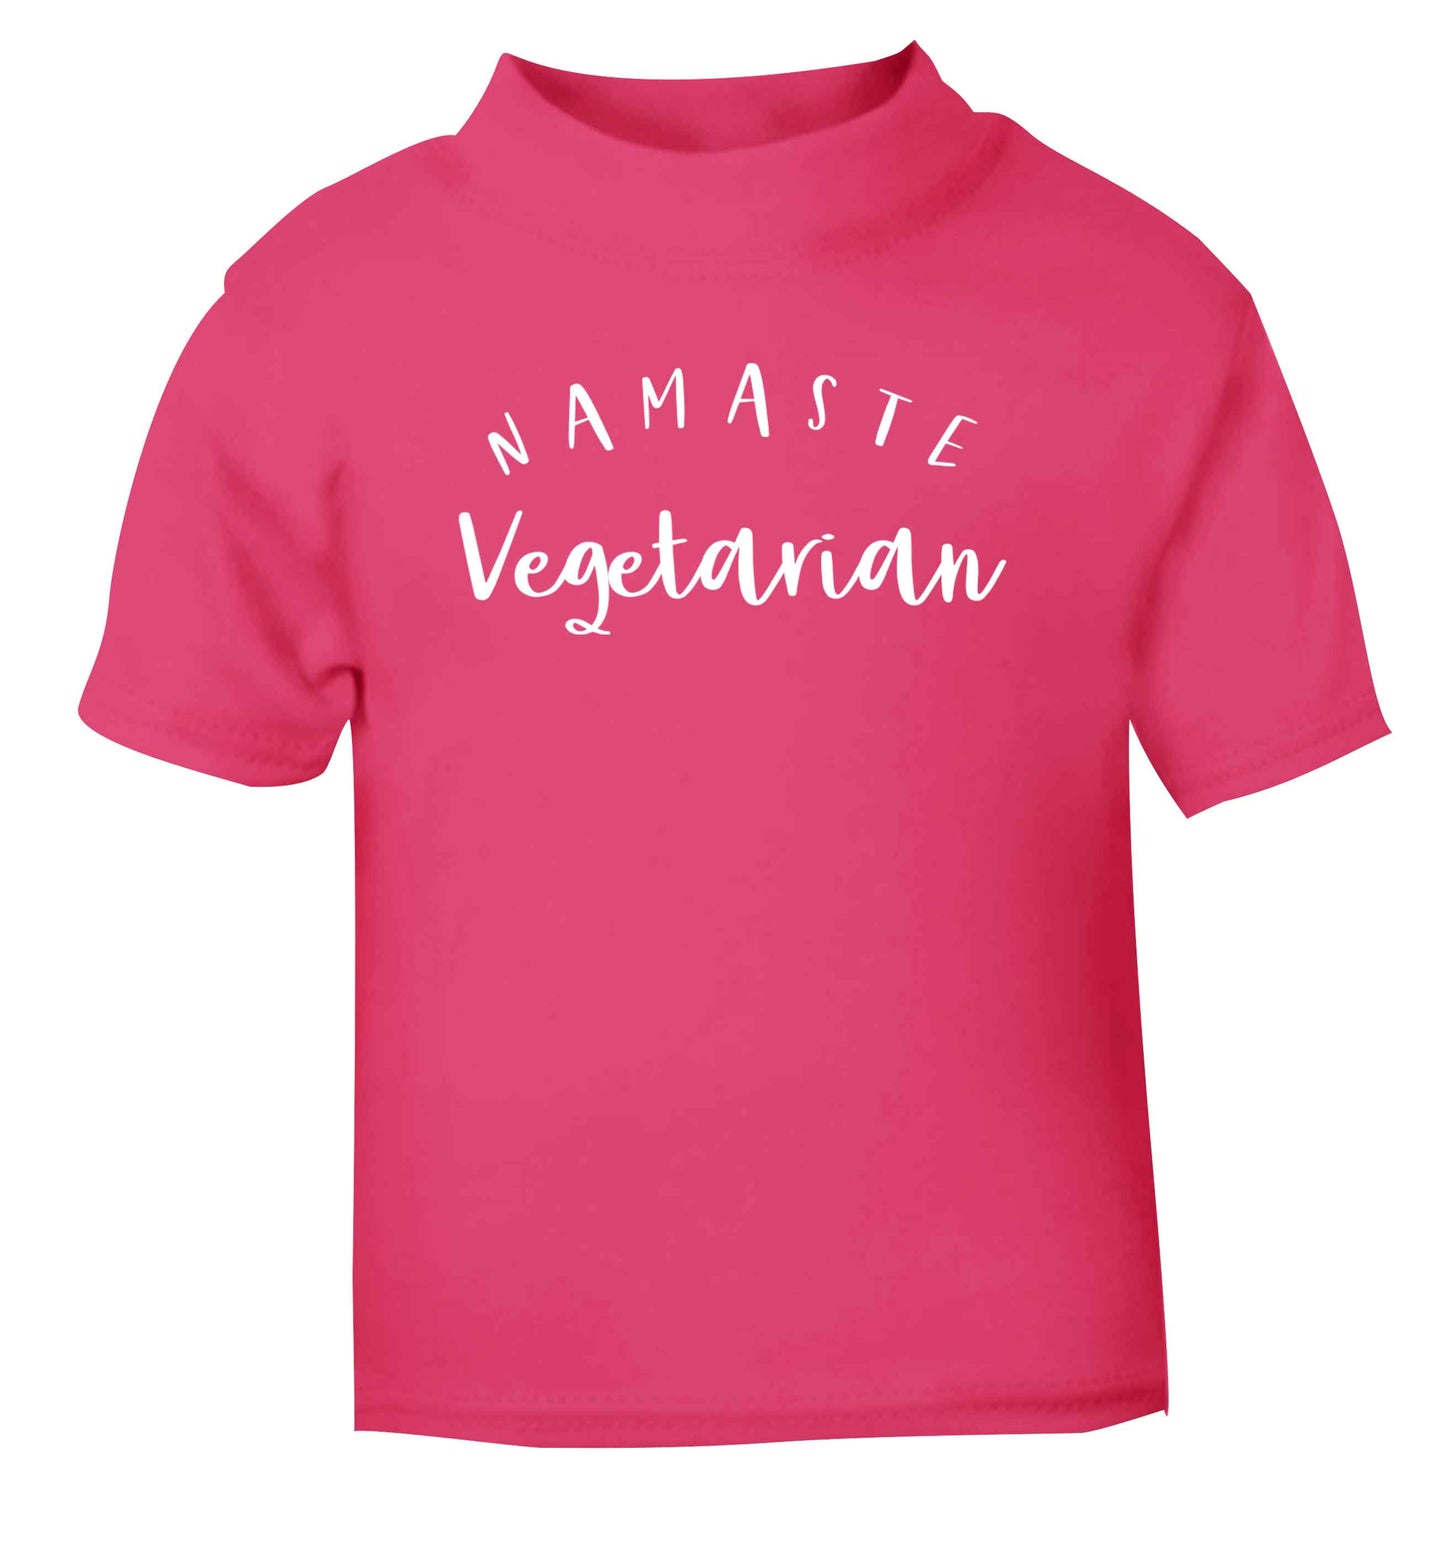 Namaste vegetarian pink Baby Toddler Tshirt 2 Years